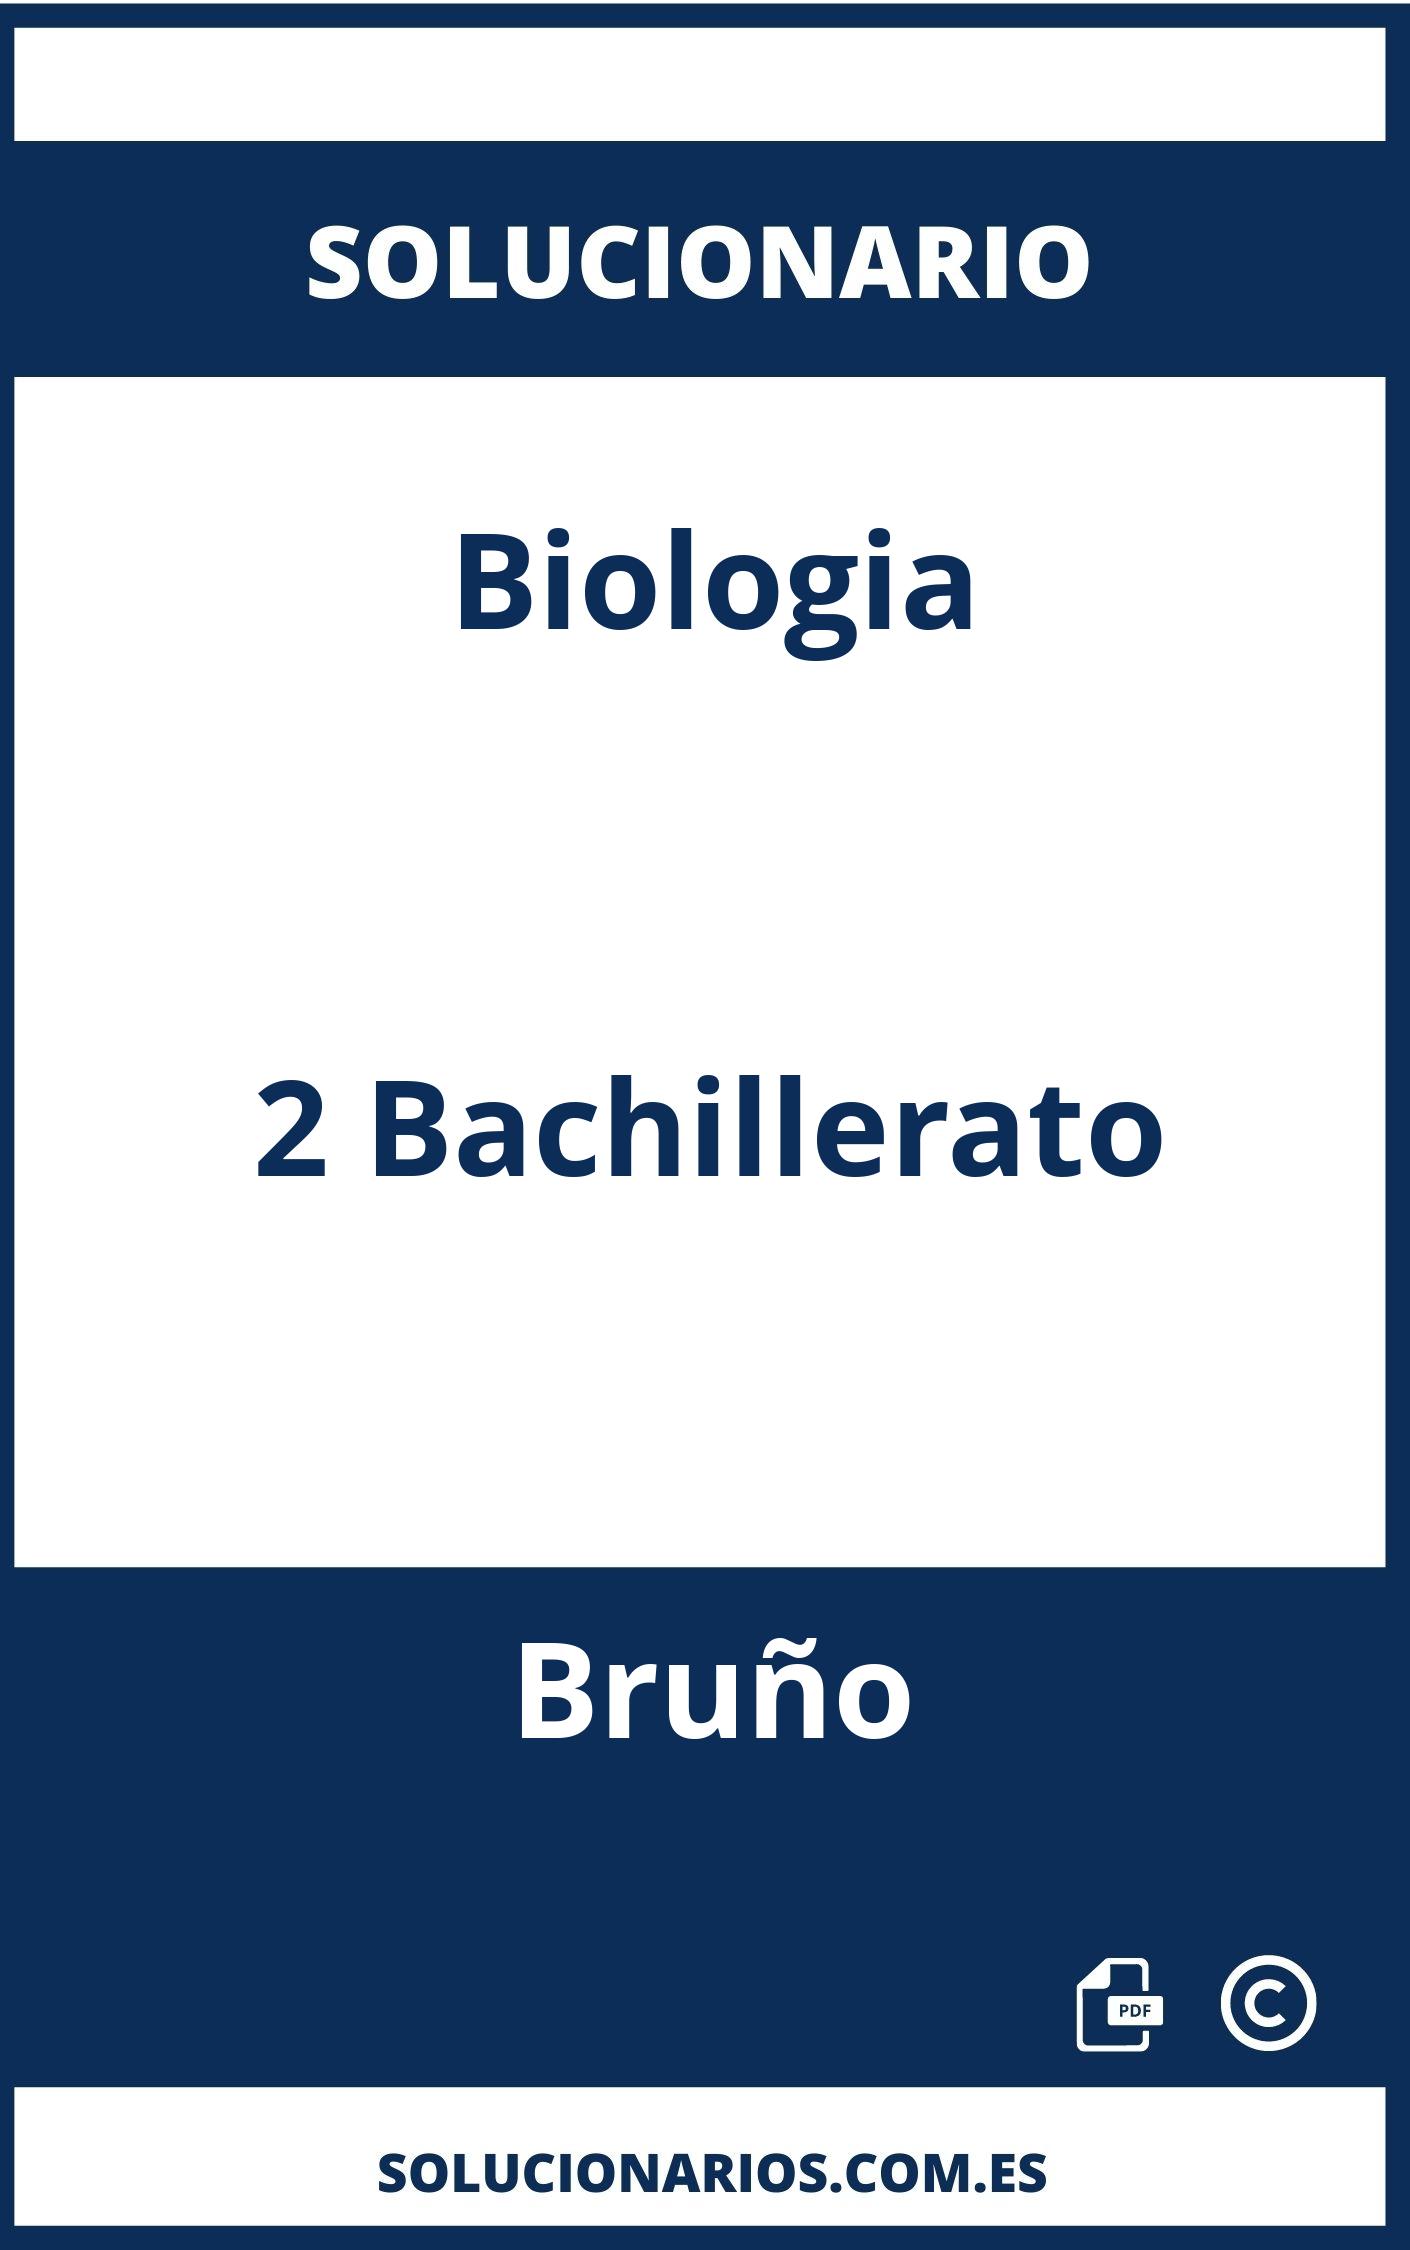 Solucionario Biologia 2 Bachillerato Bruño